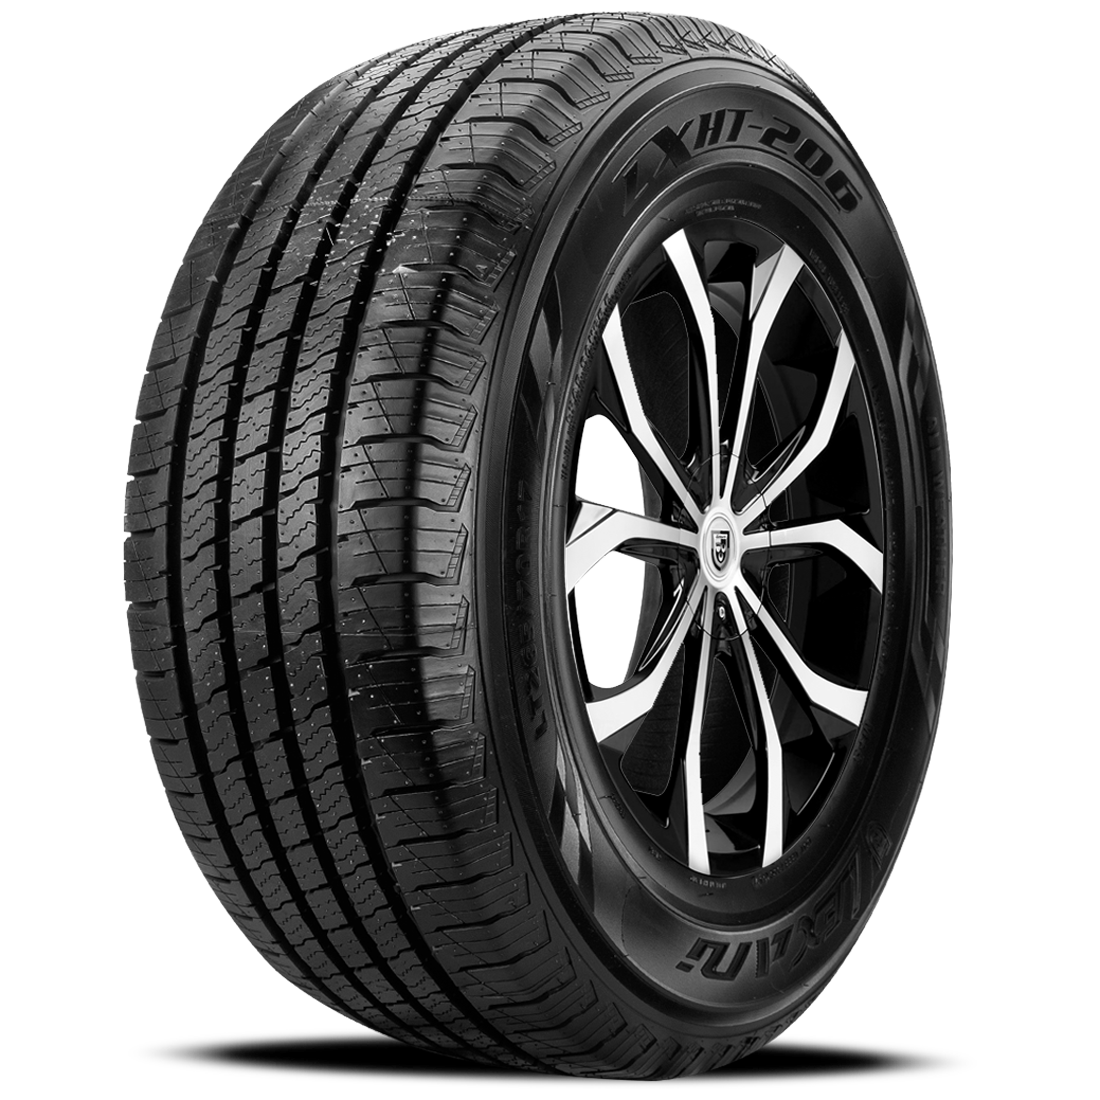 LEXANI LXHT-206 P235/75R15 (28.9X9.3R 15) Tires